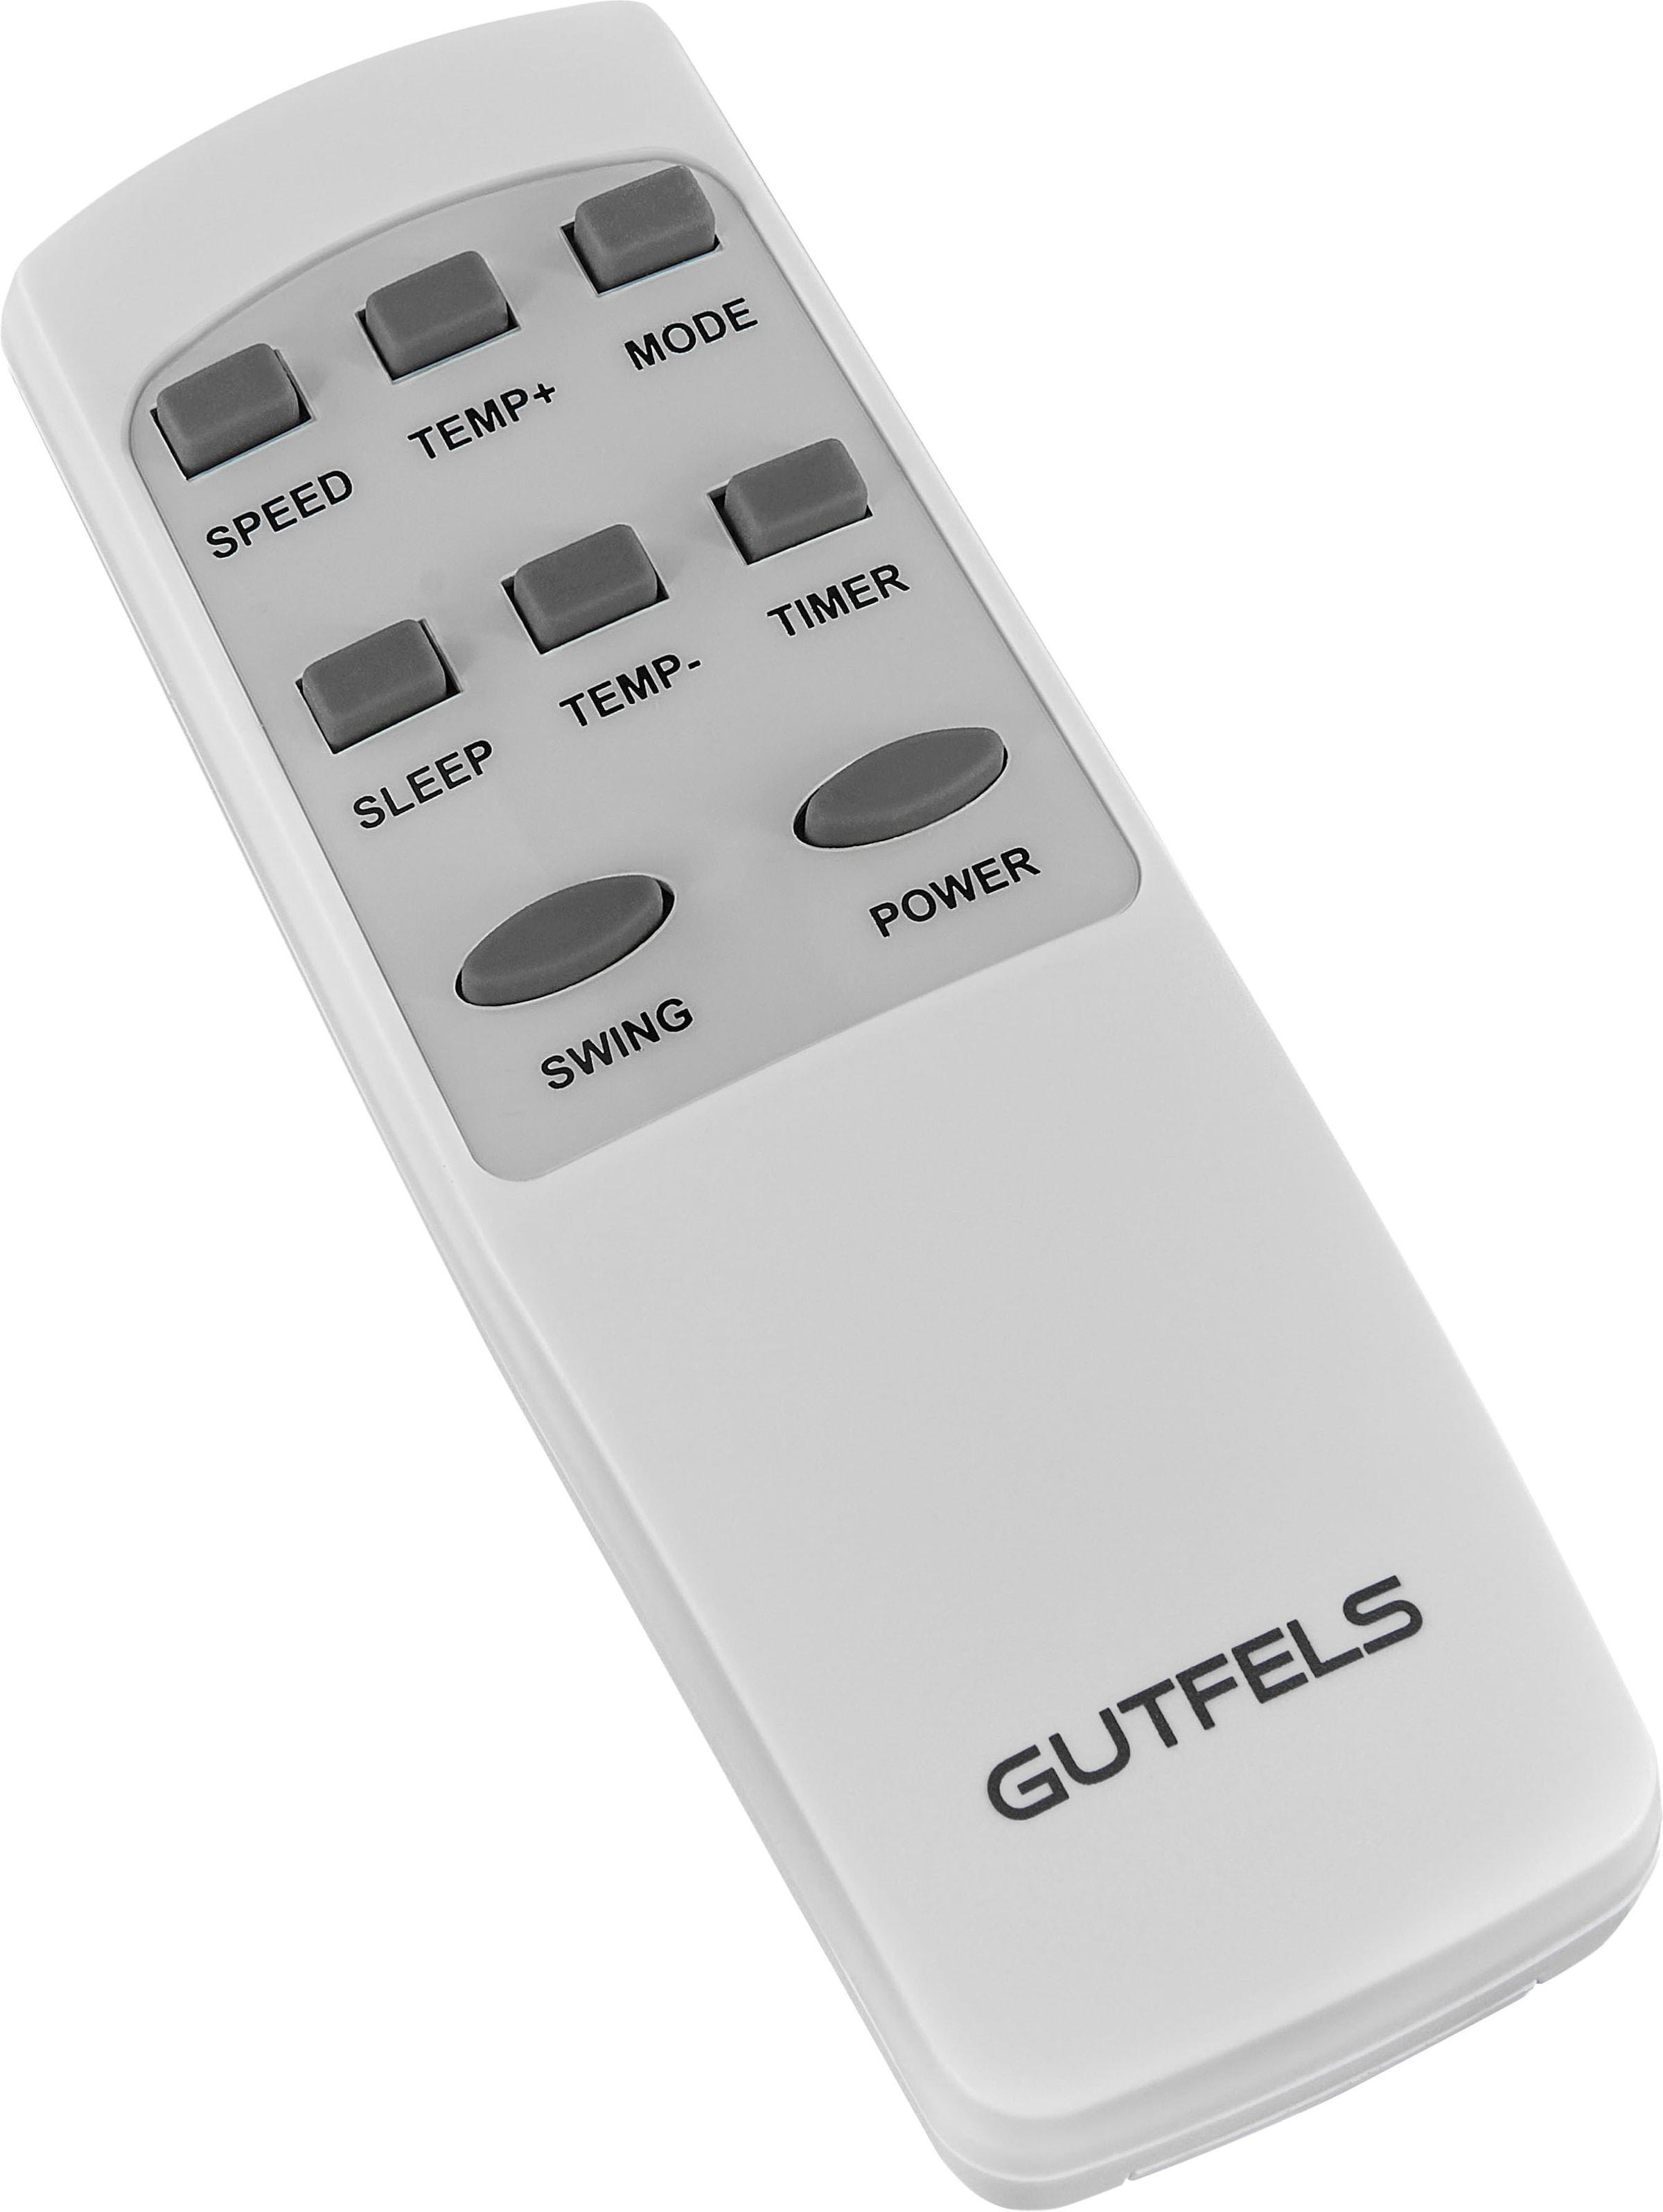 Gutfels 3-in-1-Klimagerät »CM 81456 we«, Luftkühlung - Entfeuchtung - Ventilation, geeignet für 45 m² Räume